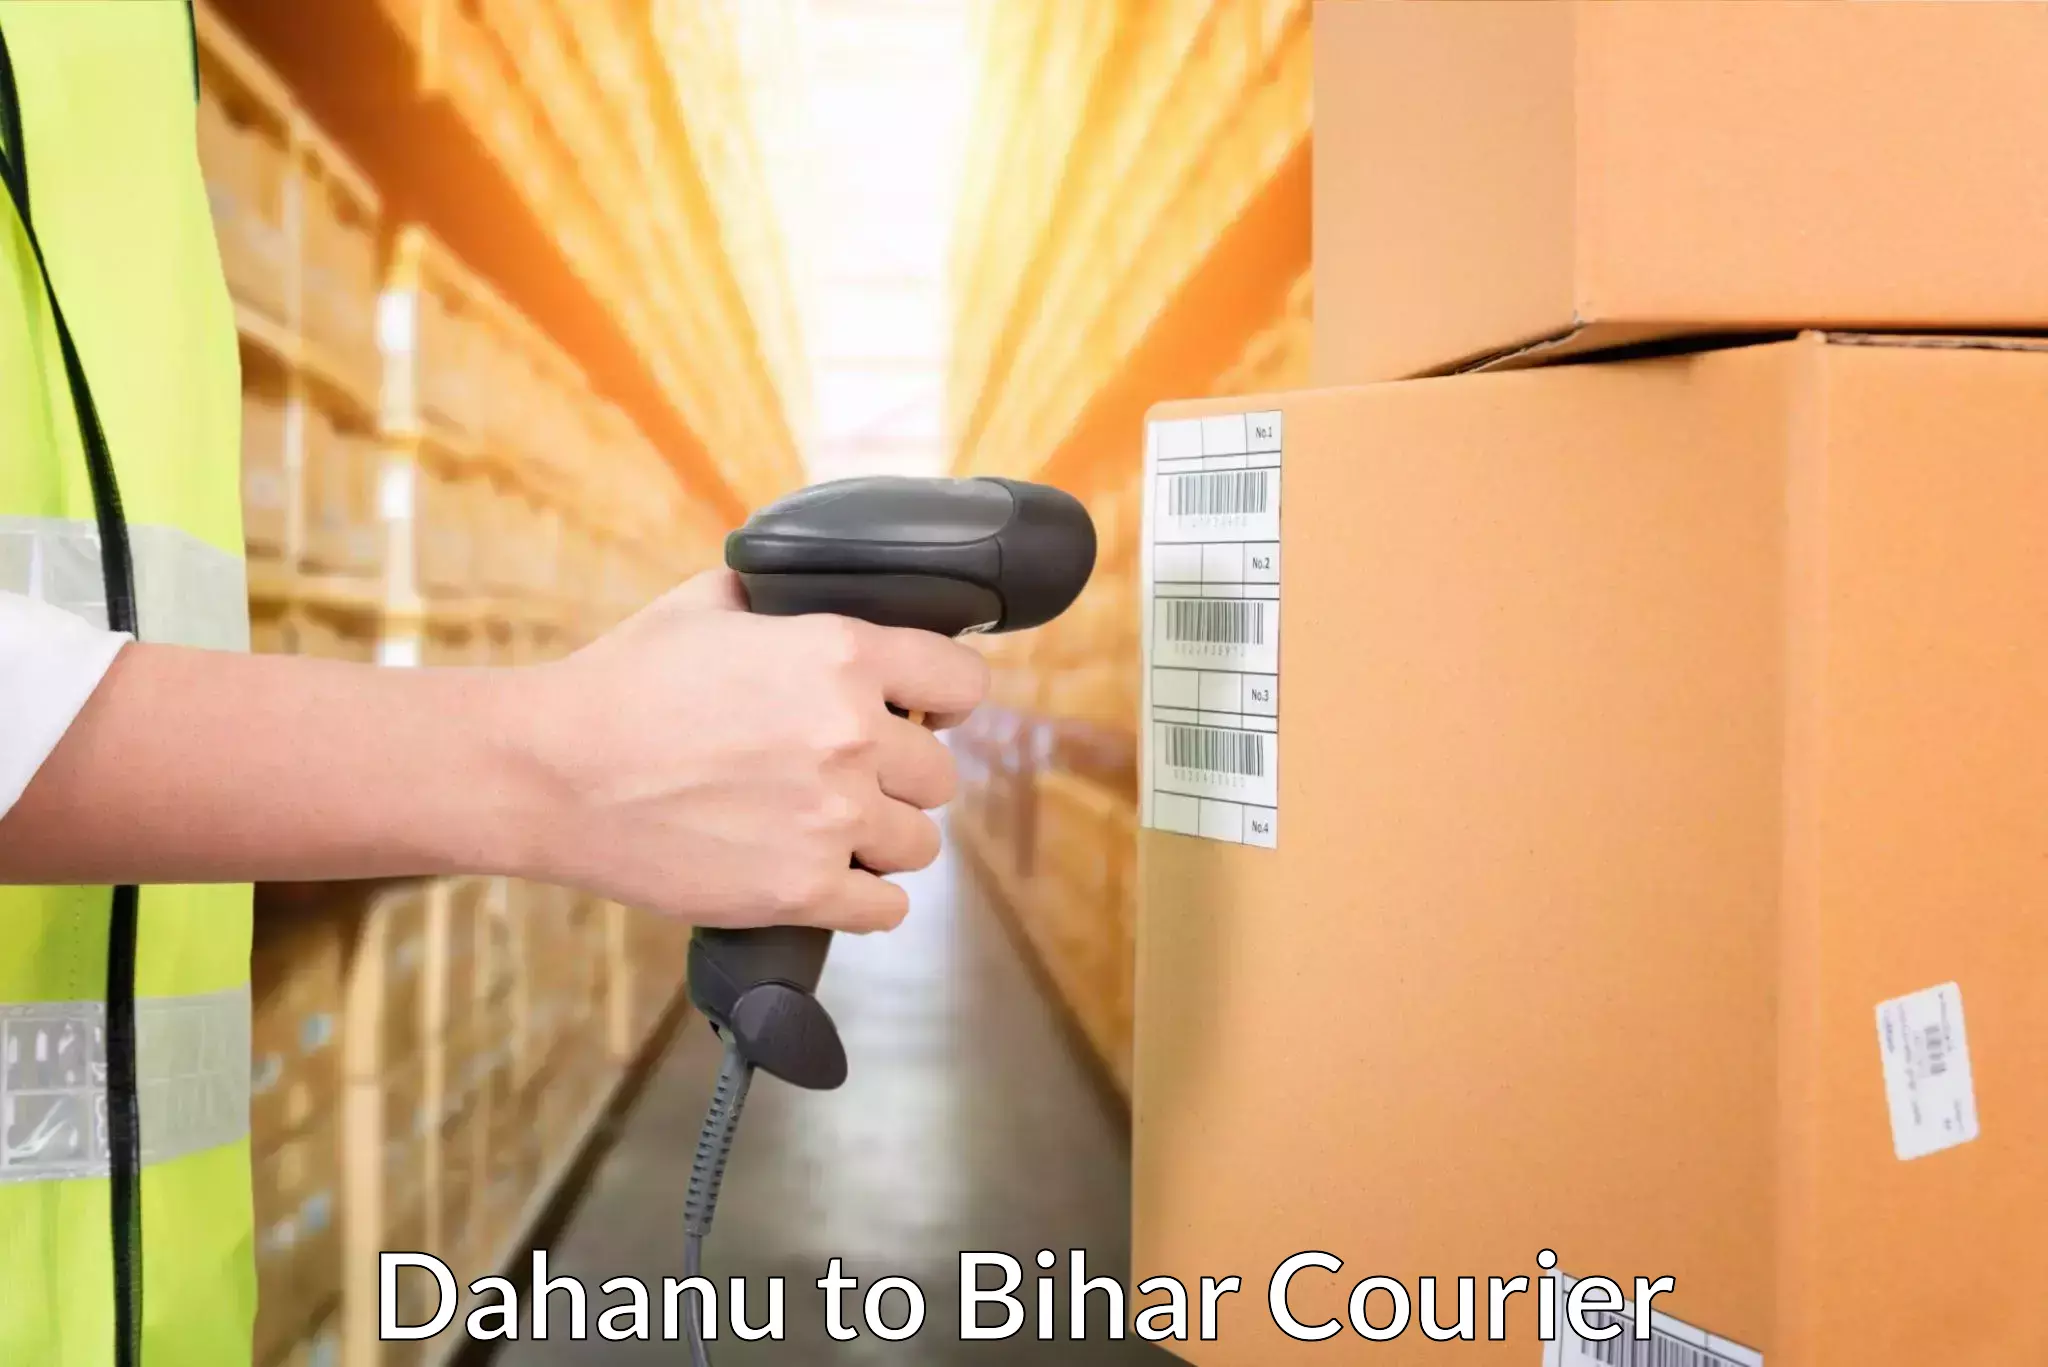 Affordable parcel service Dahanu to Wazirganj